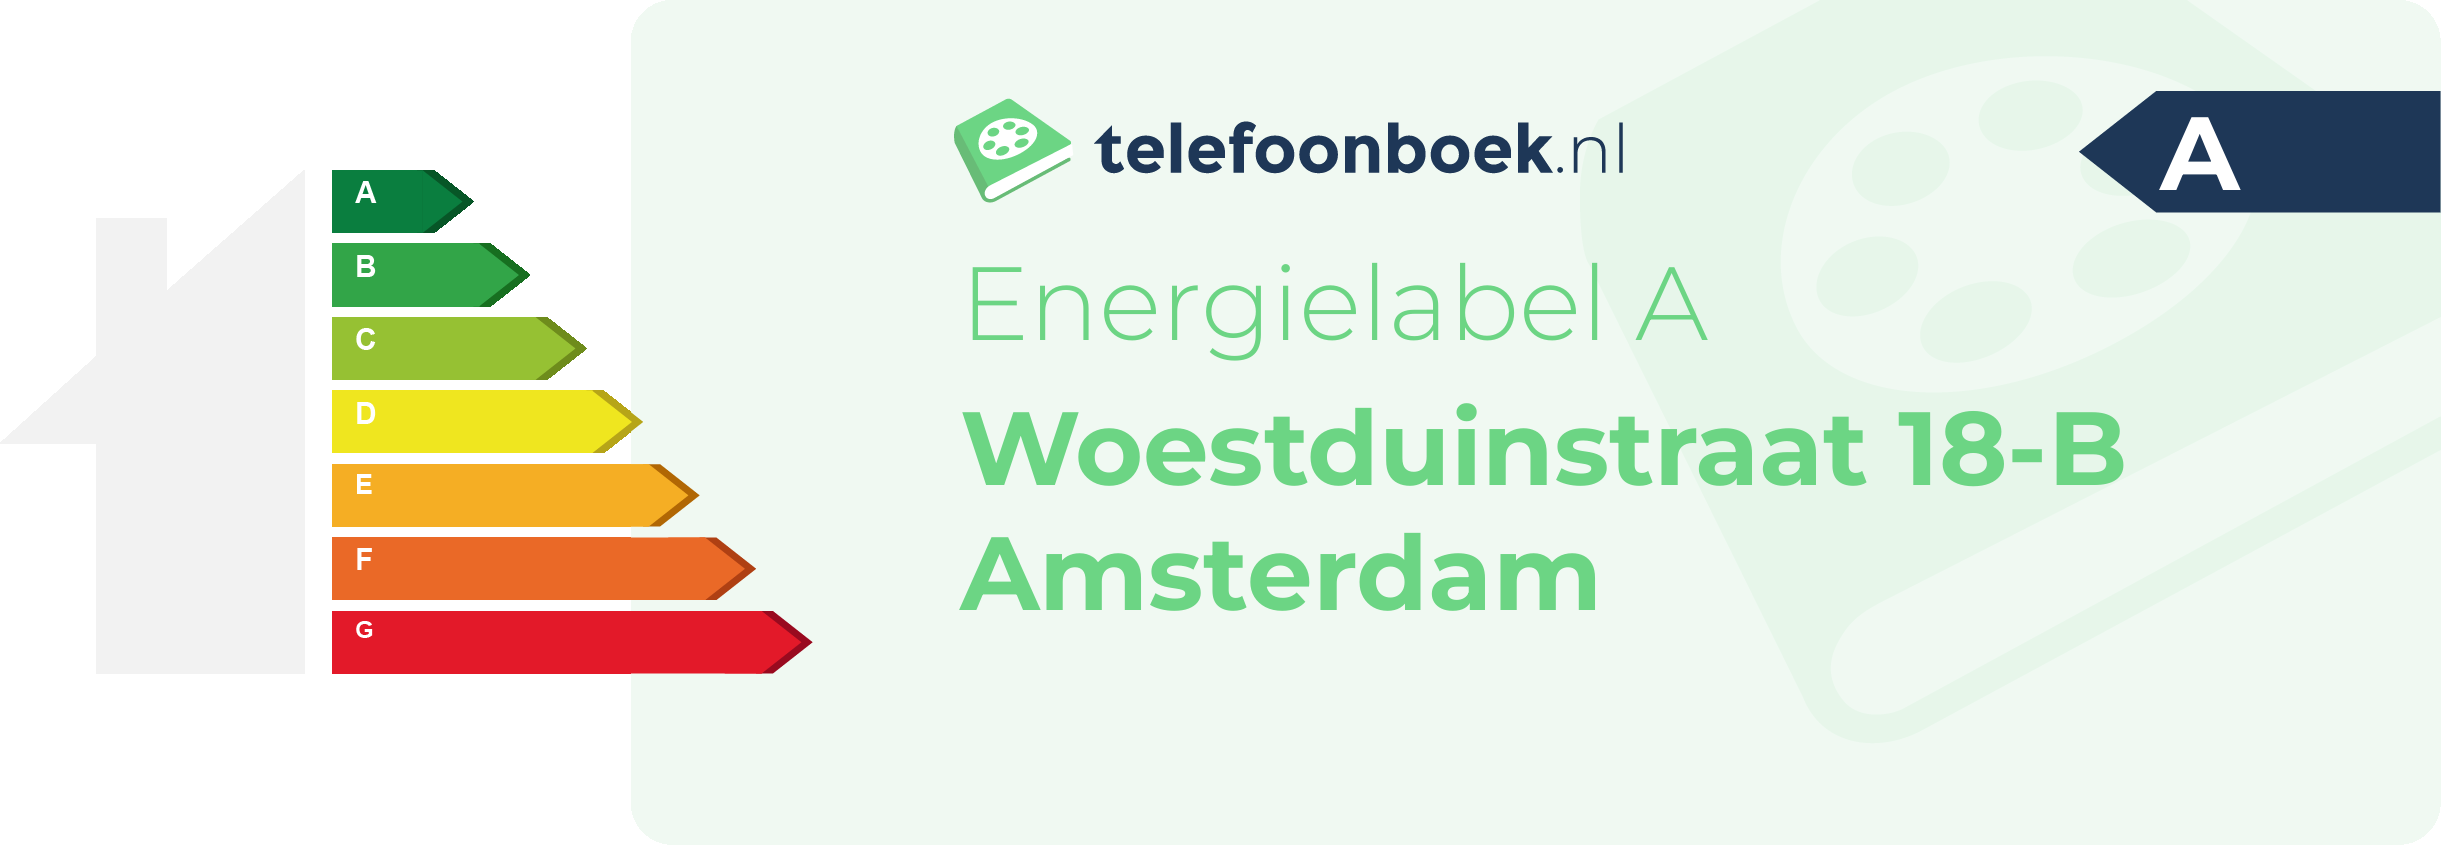 Energielabel Woestduinstraat 18-B Amsterdam